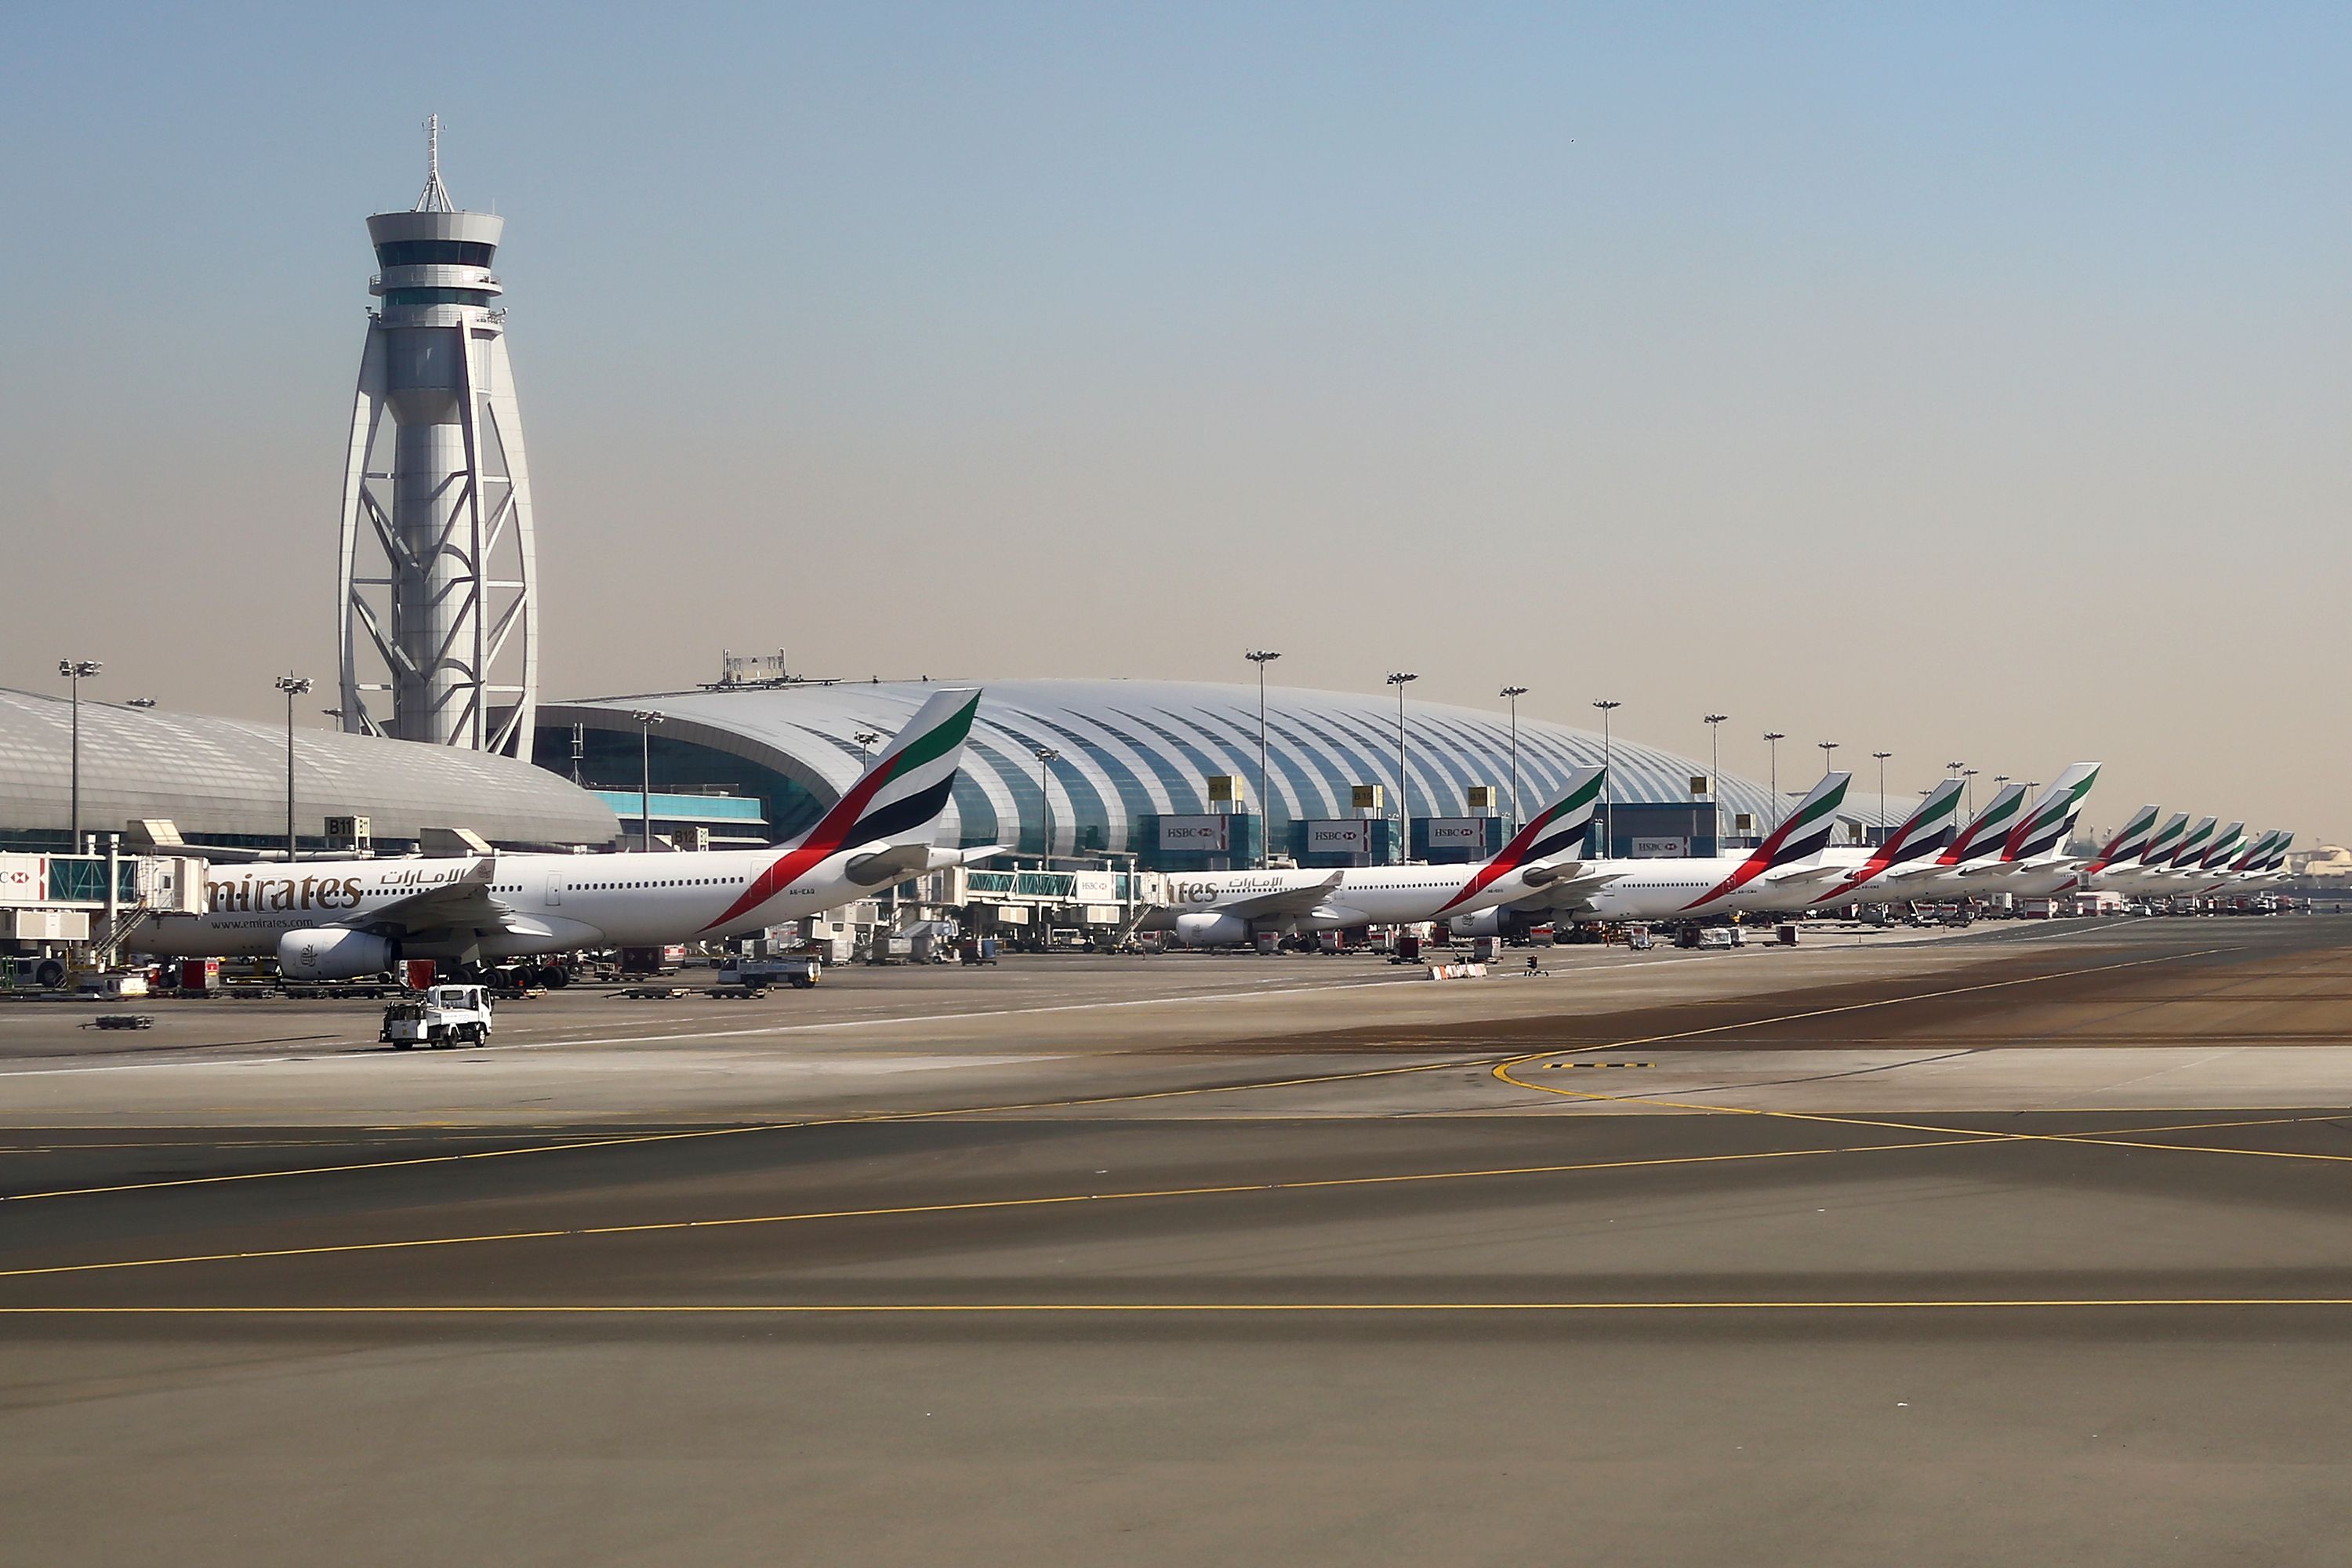 Emirates fleet parked at terminal